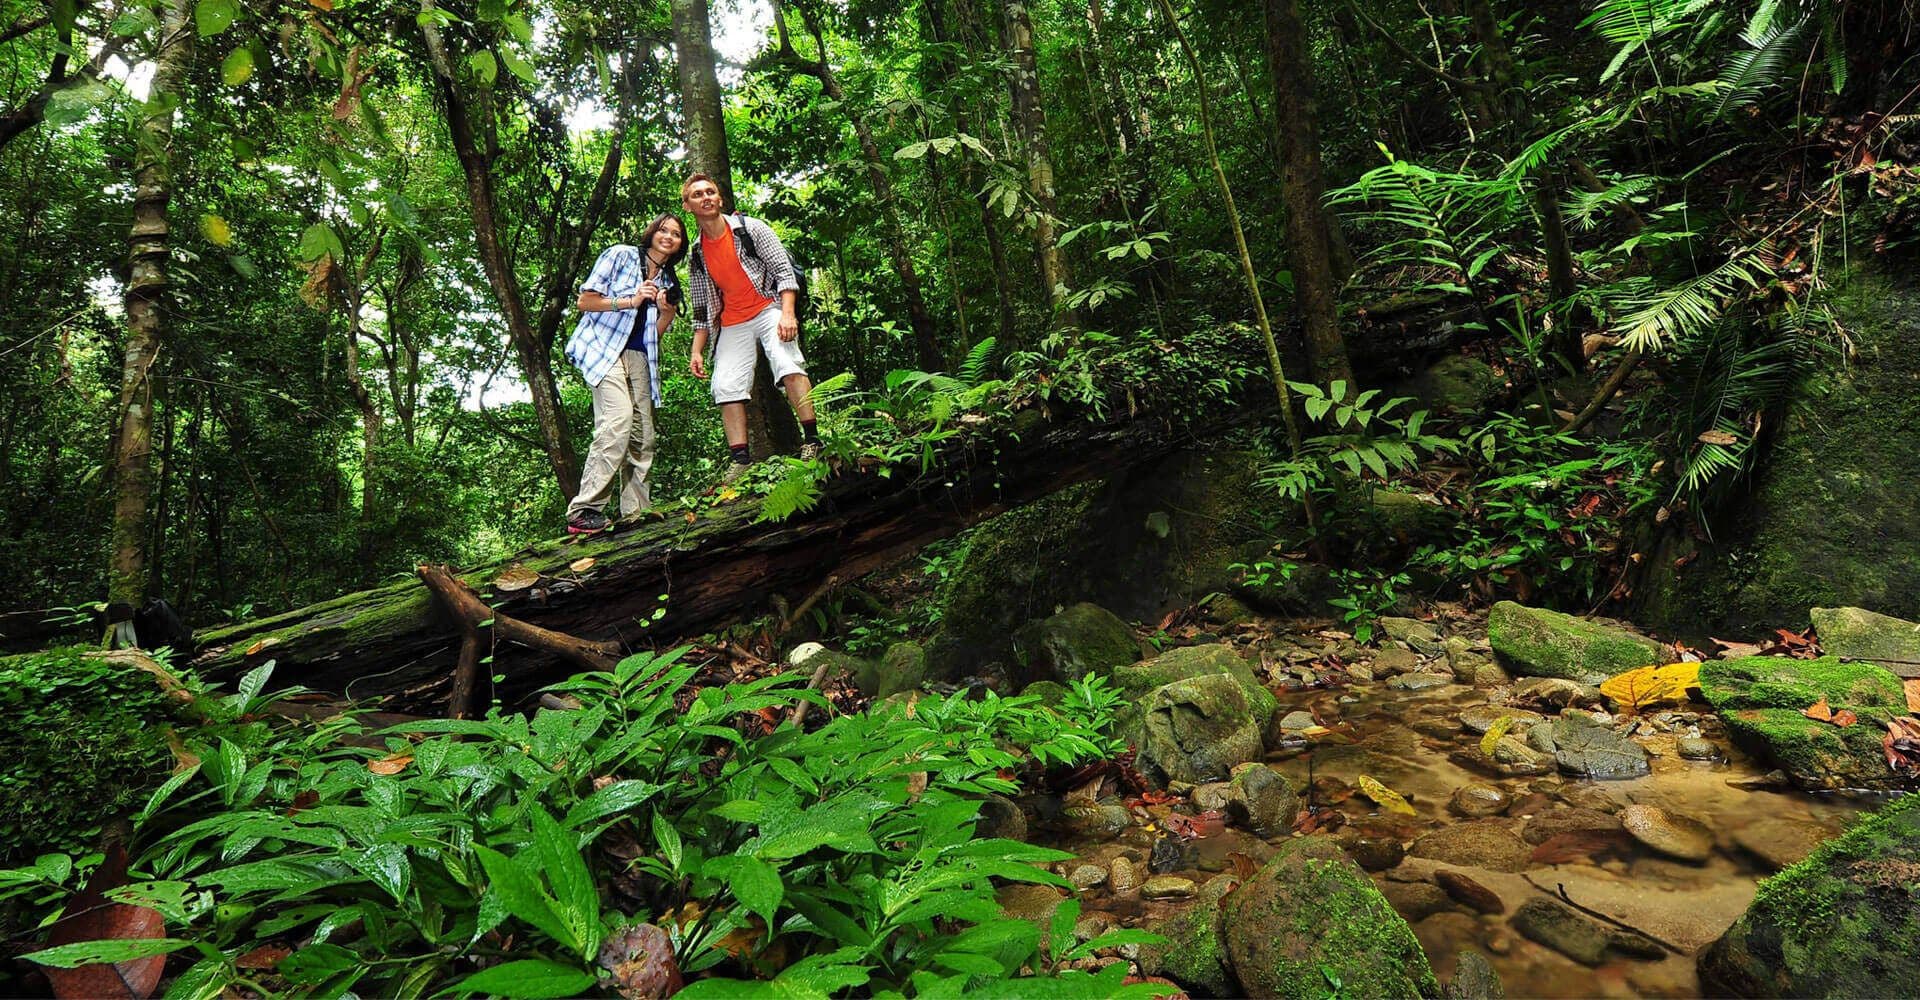 السياح يستكشفون النباتات والحيوانات في الغابة المطيرة Kithulgala ، سريلانكا